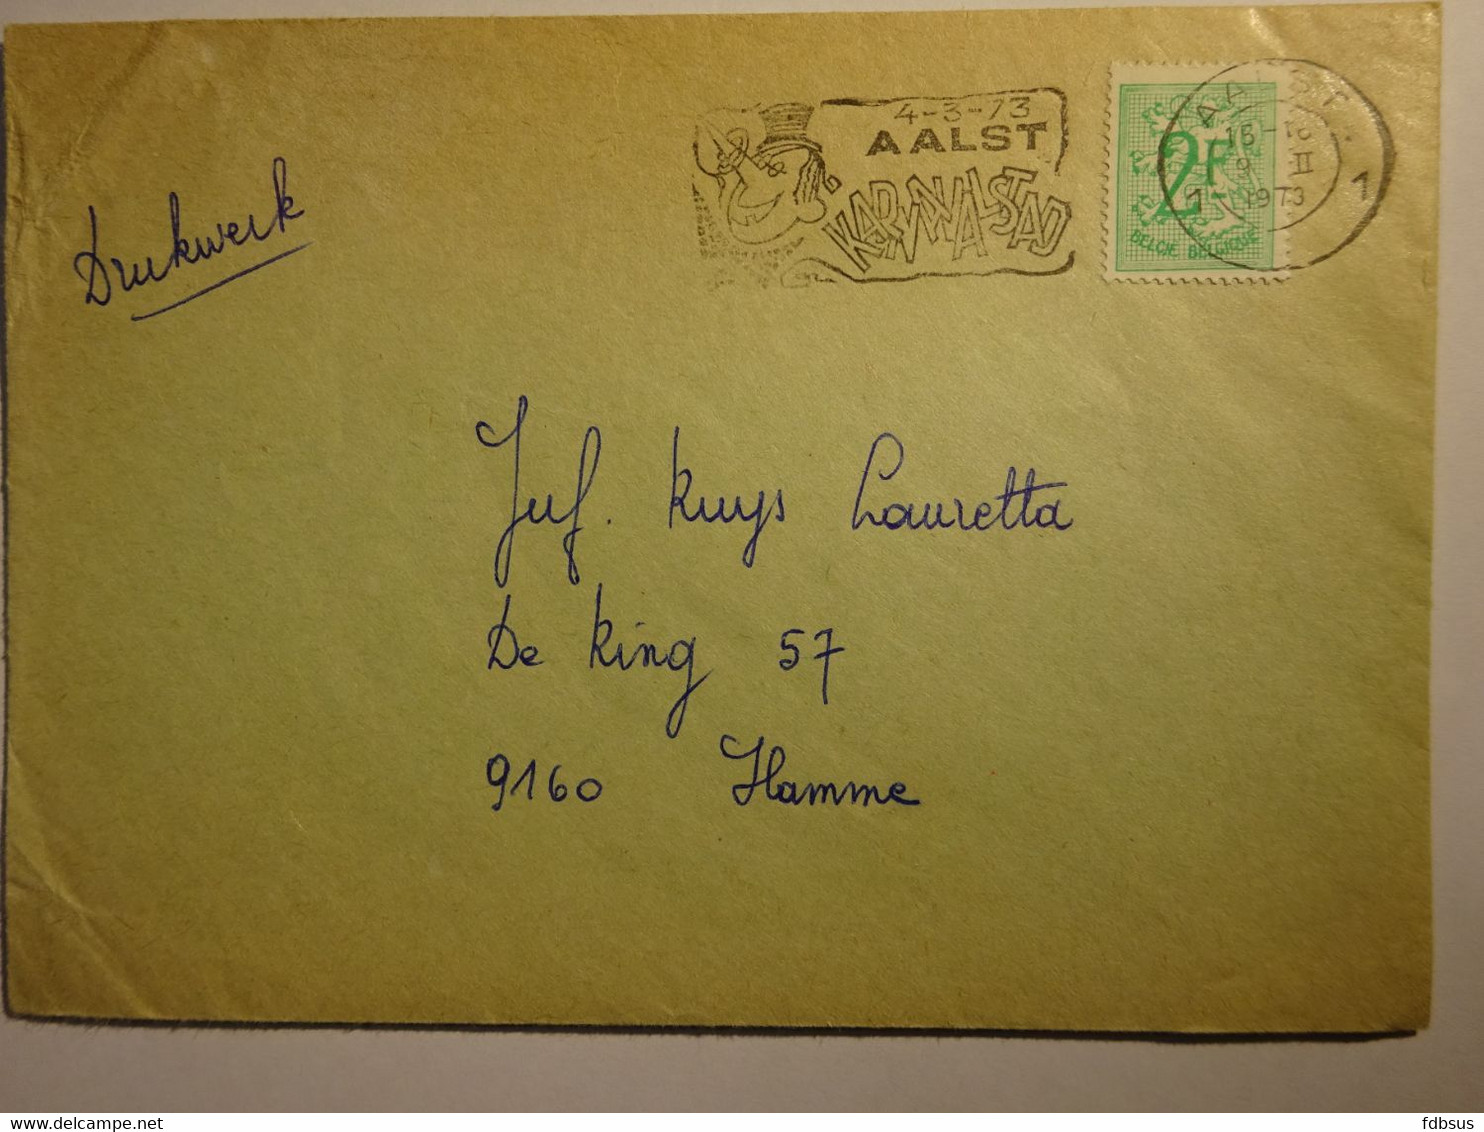 1973 Enveloppe Van AALST Naar Hamme - Gefr. 2 Fr + Mooie Stempel Met Toeristische 4-3-73 AALST KARNAVALSTAD - 1977-1985 Figuras De Leones